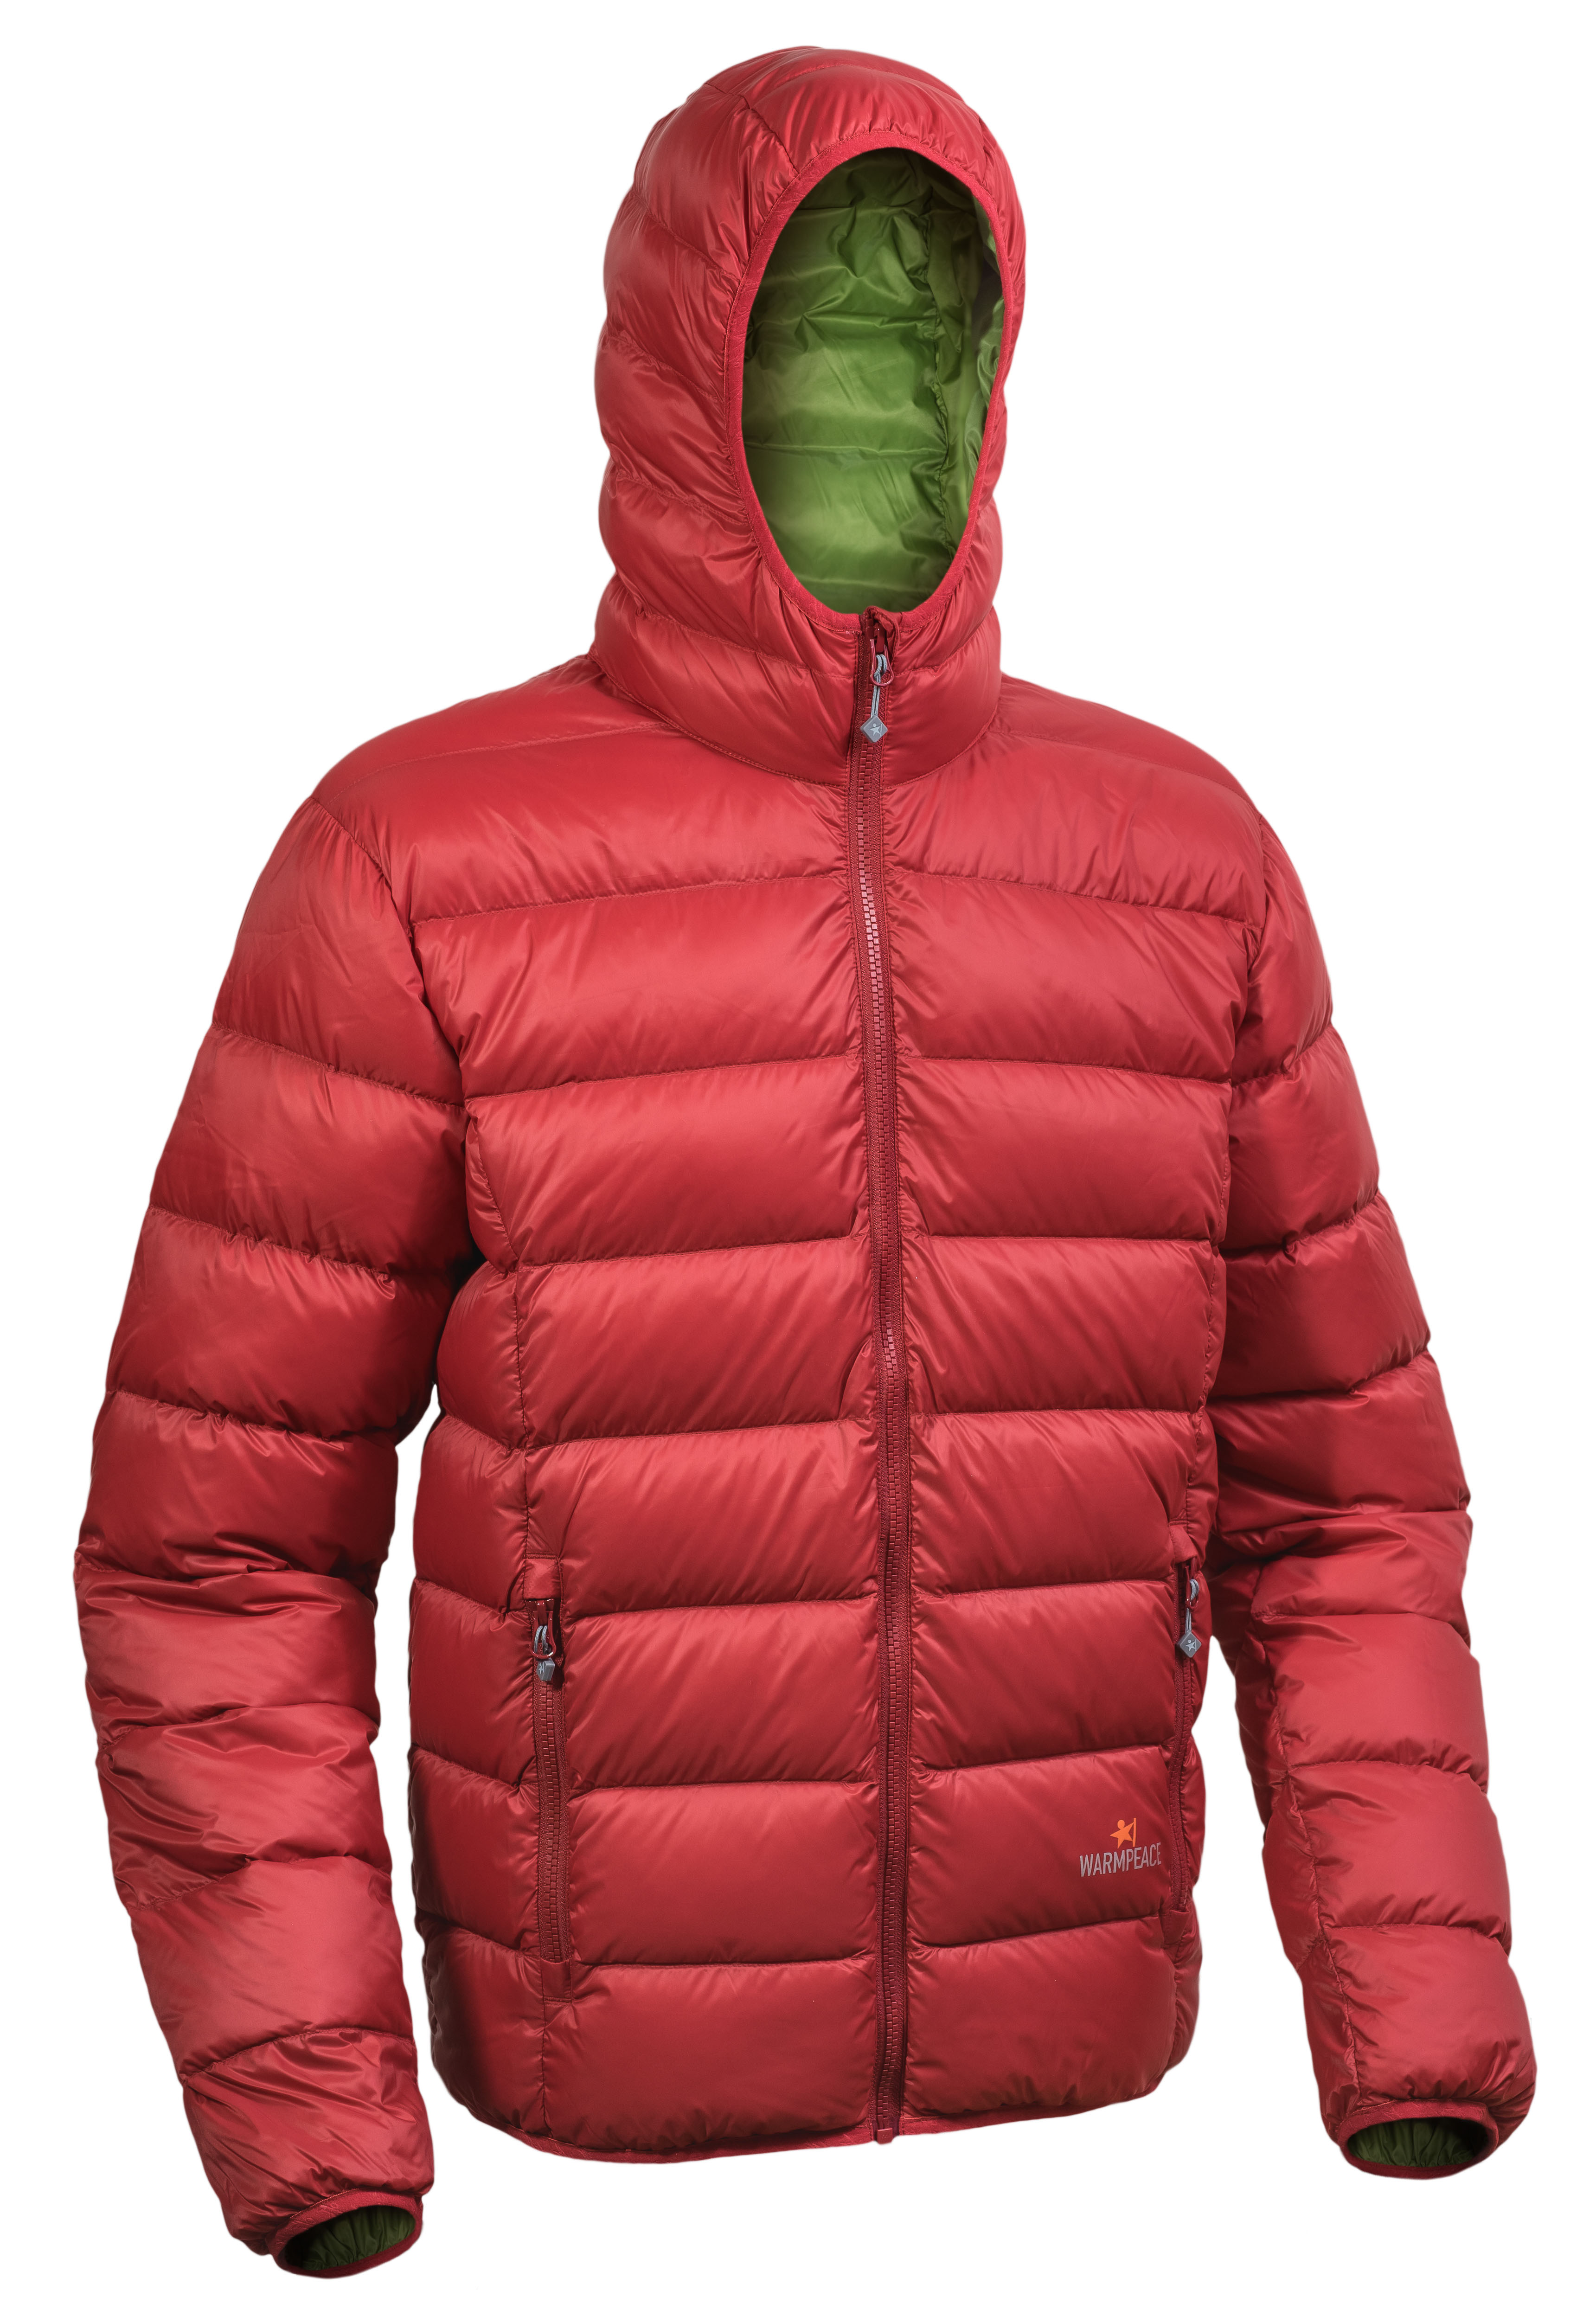 Warmpeace péřová bunda Vernon Barva: mars red/olive green, Velikost: M